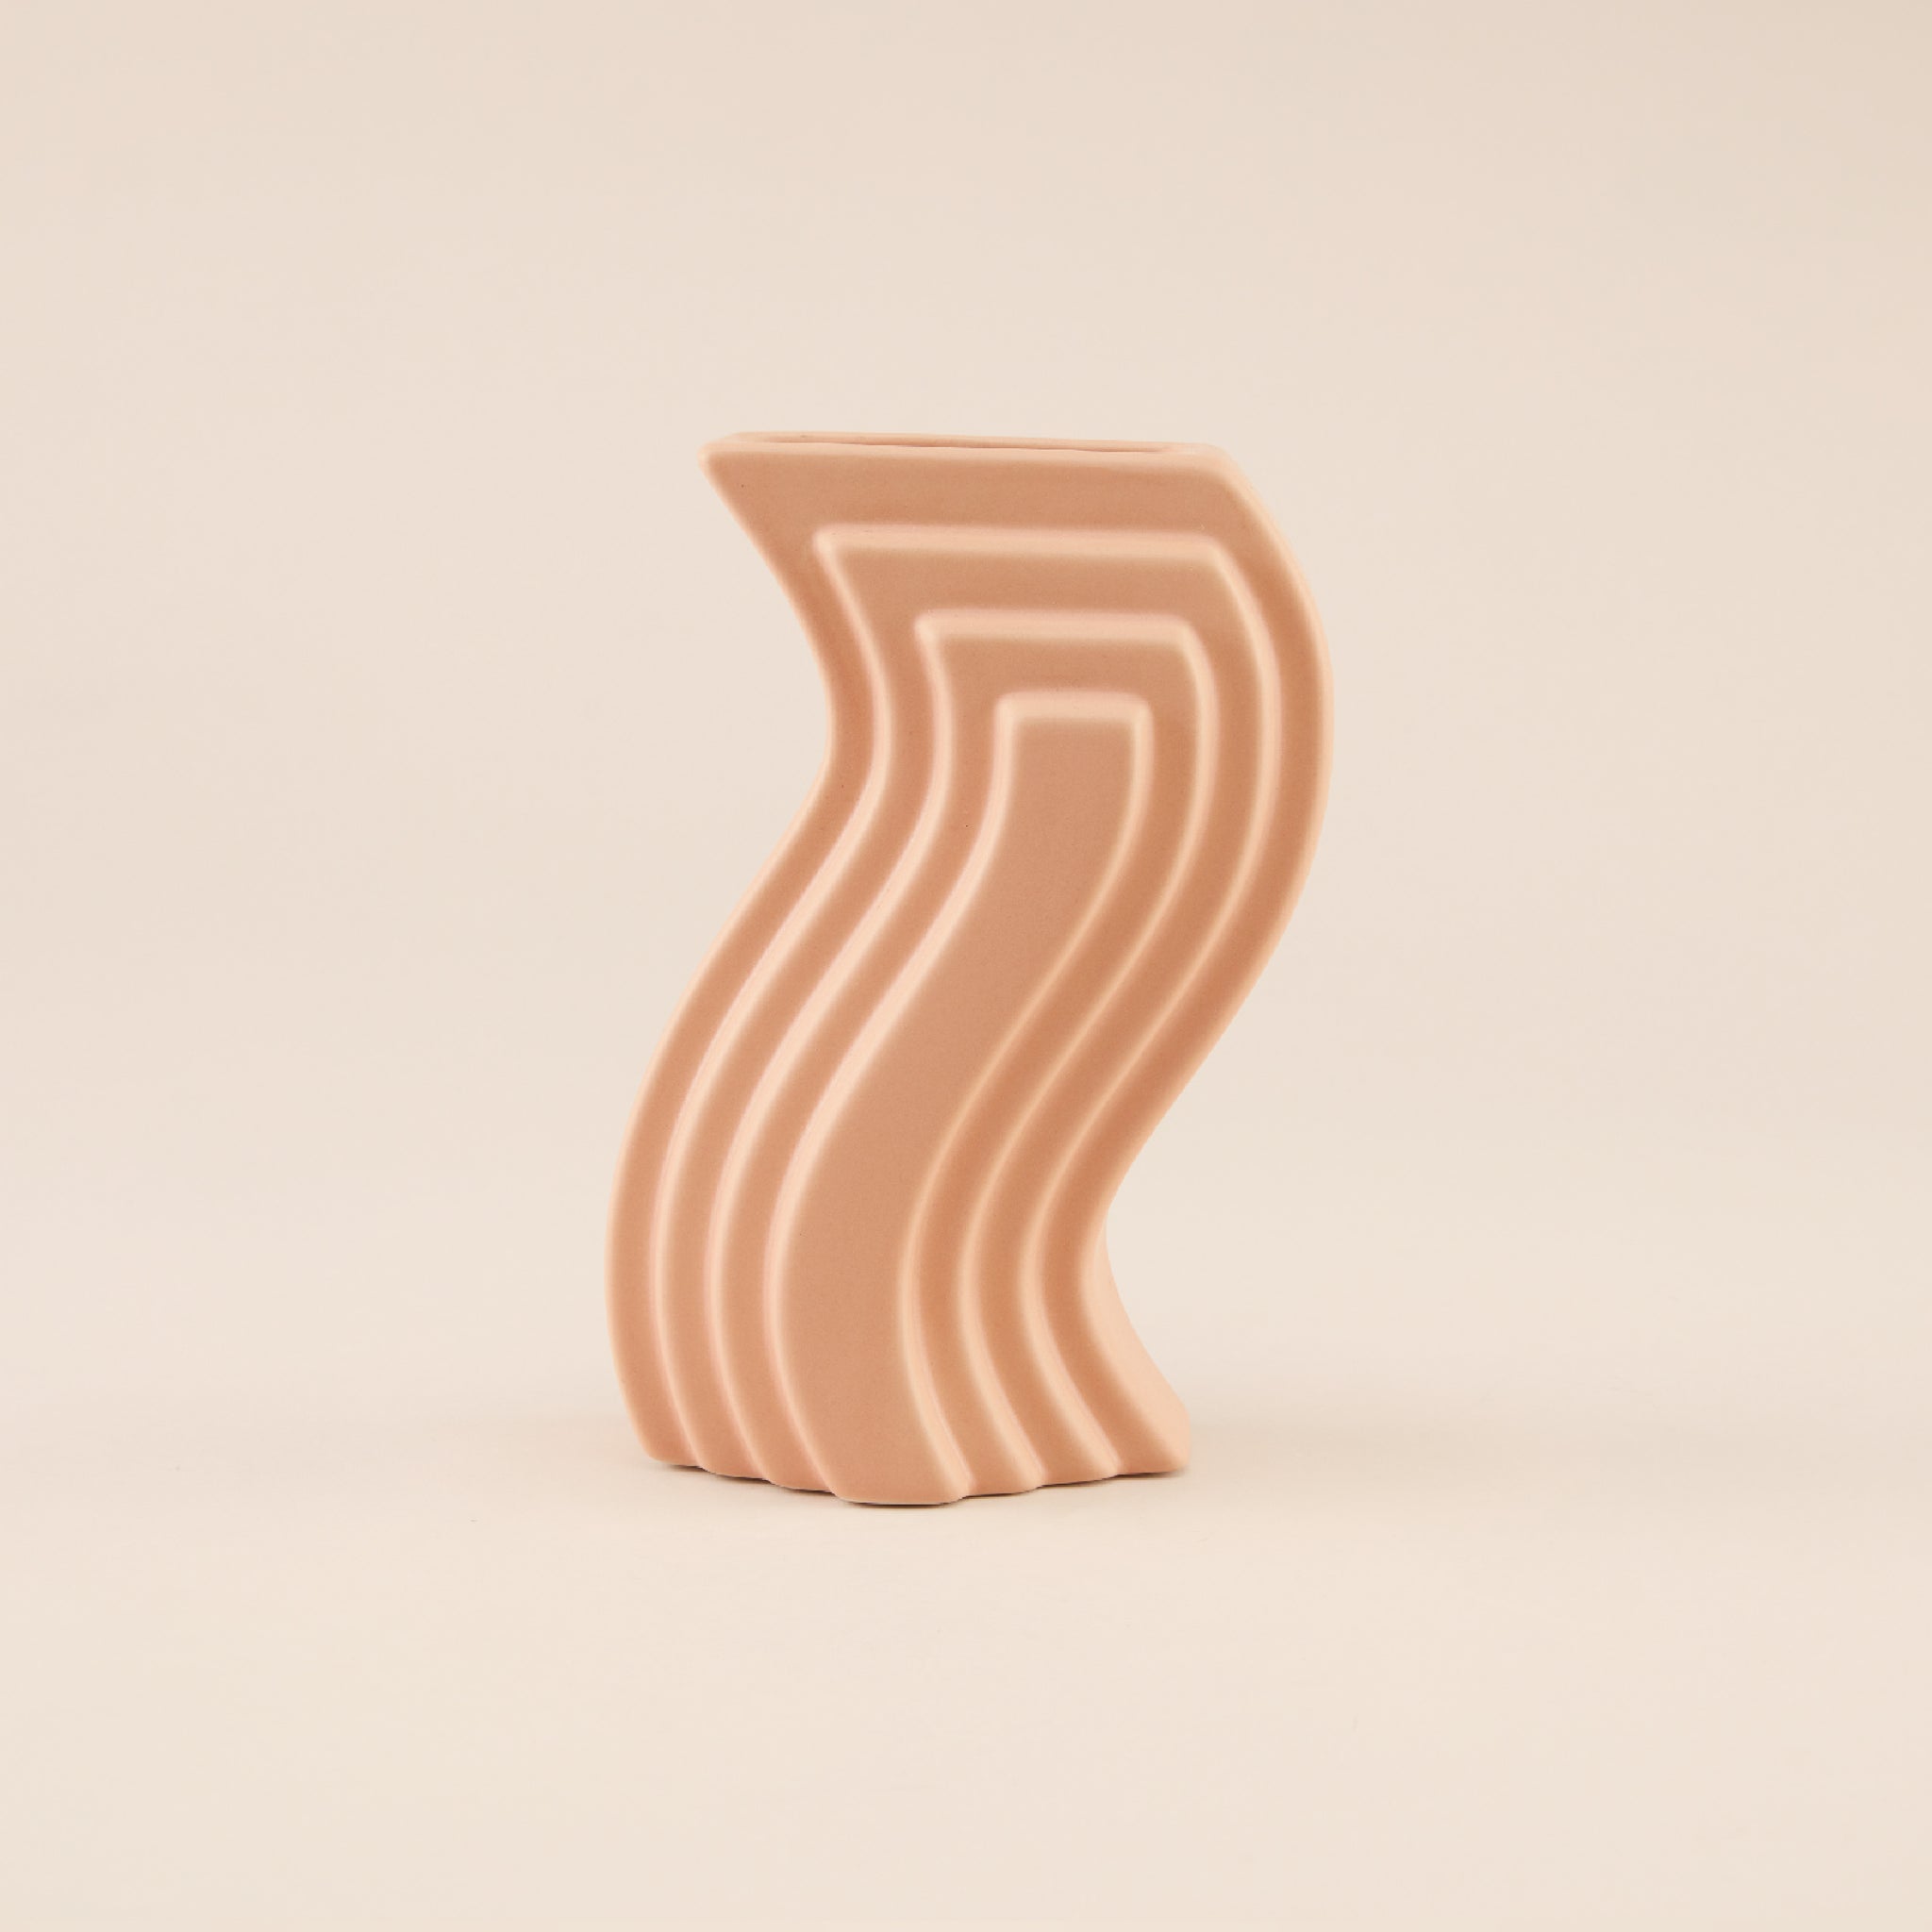 Wavy Steps Ceramic Vase | แจกัน เซรามิก